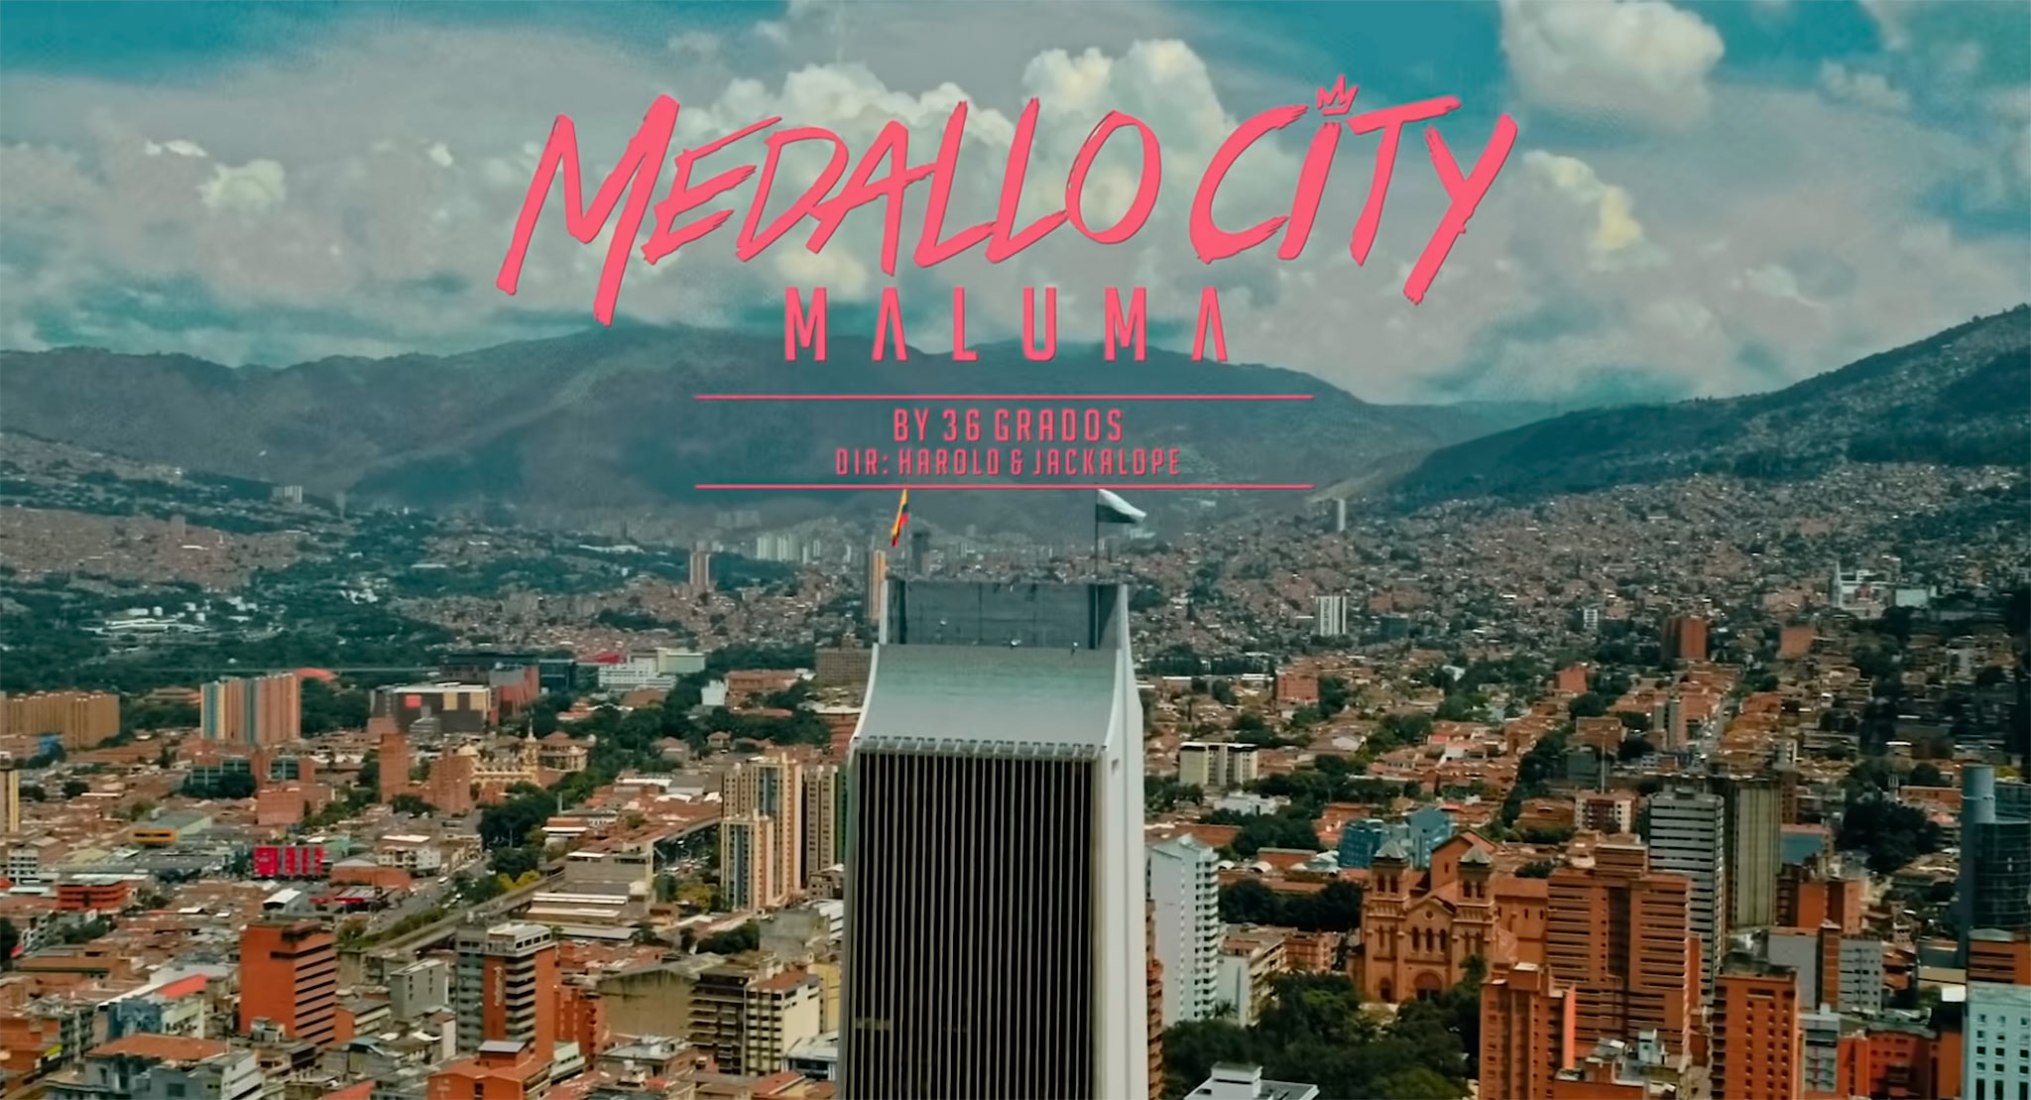 Medallo City por Maluma 